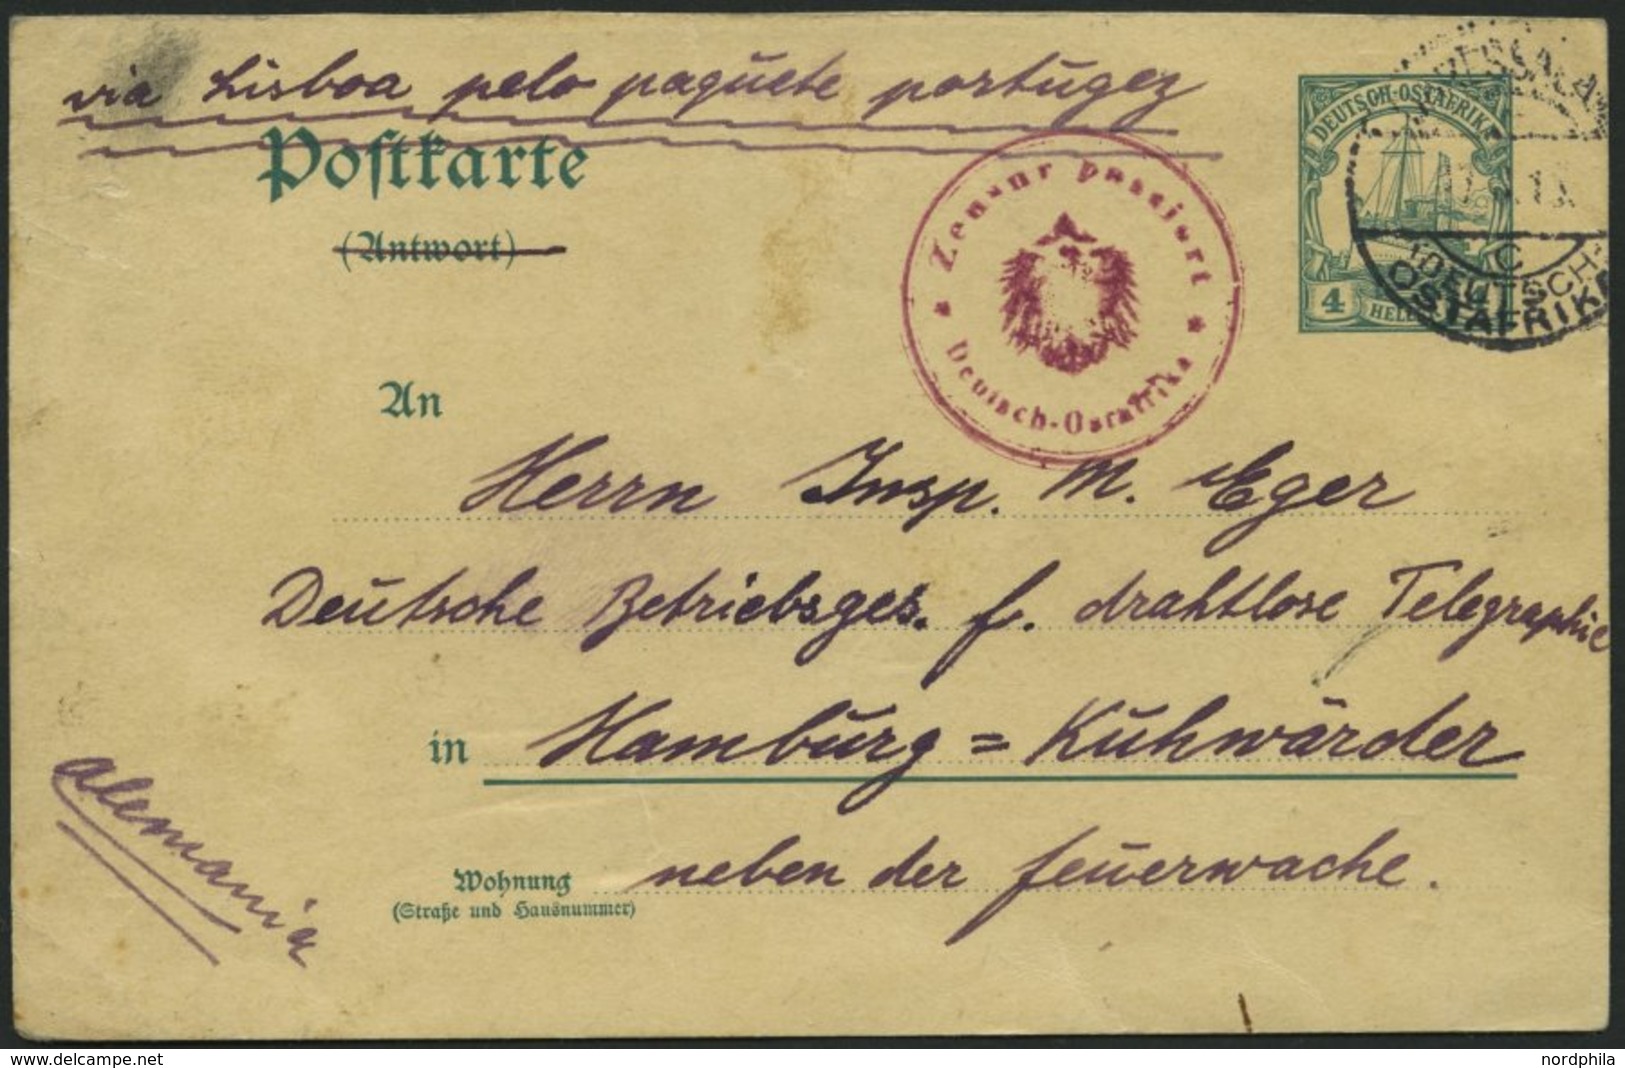 DEUTSCH-OSTAFRIKA P 20A BRIEF, 1915, 4 H. Grün,(Antwort Durchgestrichen), Stempel DAR-ES-SALAAM C, 17.8.1915 Und Zensurs - Africa Orientale Tedesca